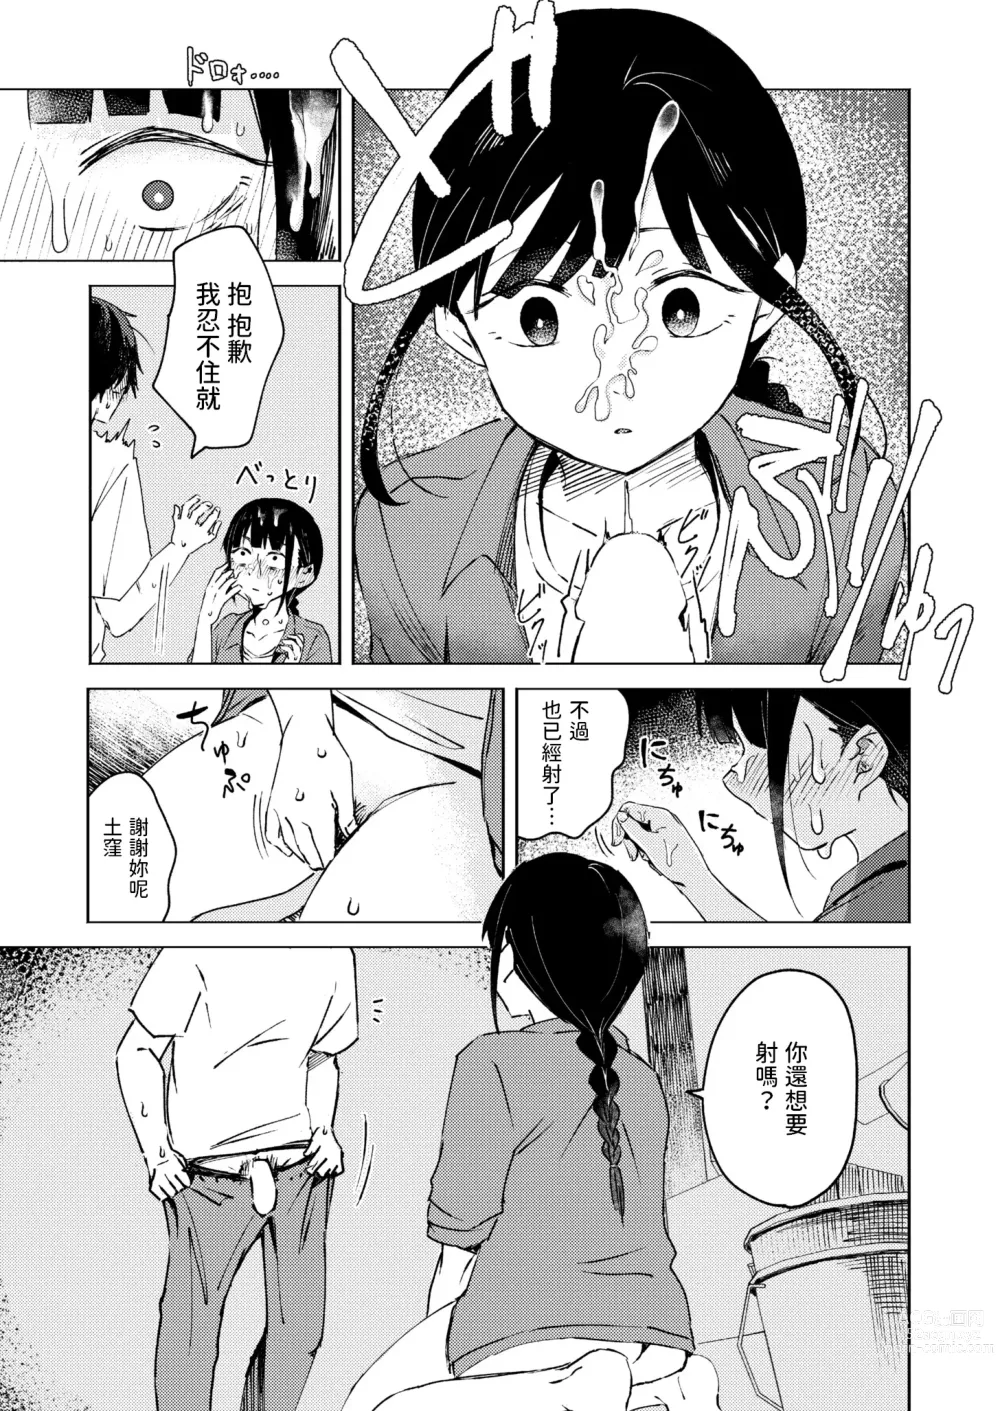 Page 7 of manga Shuukaku Ari